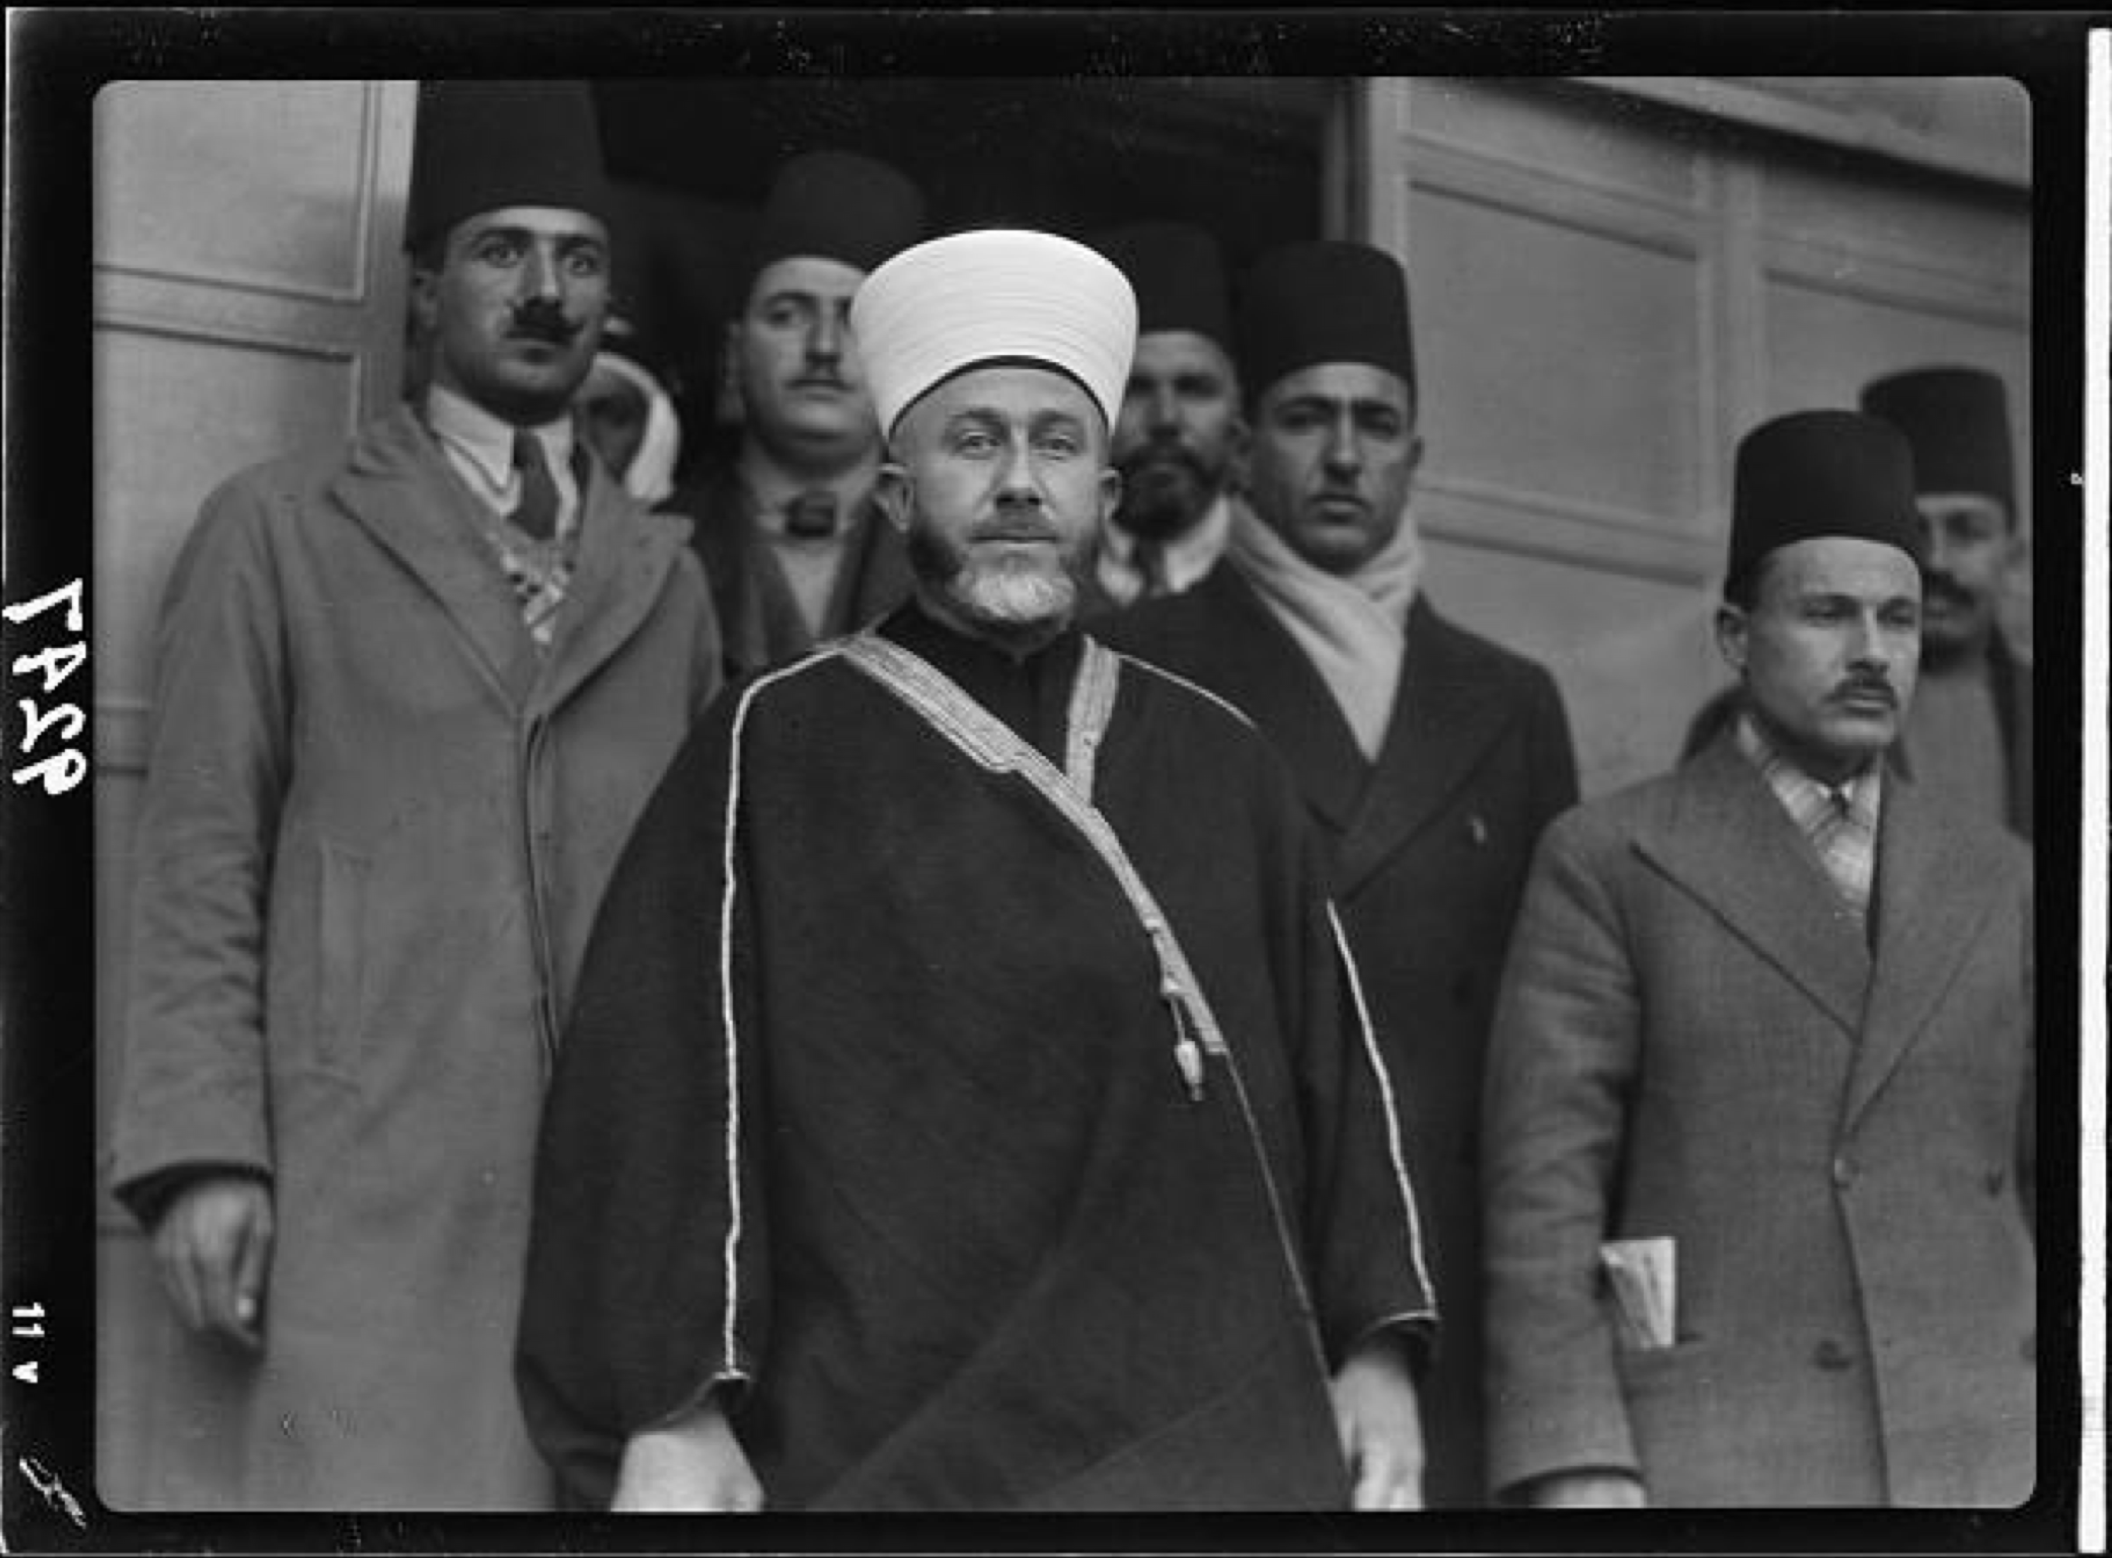 La decisión del muftí Hajj Amin al-Husayni de rechazar el Libro Blanco de 1939